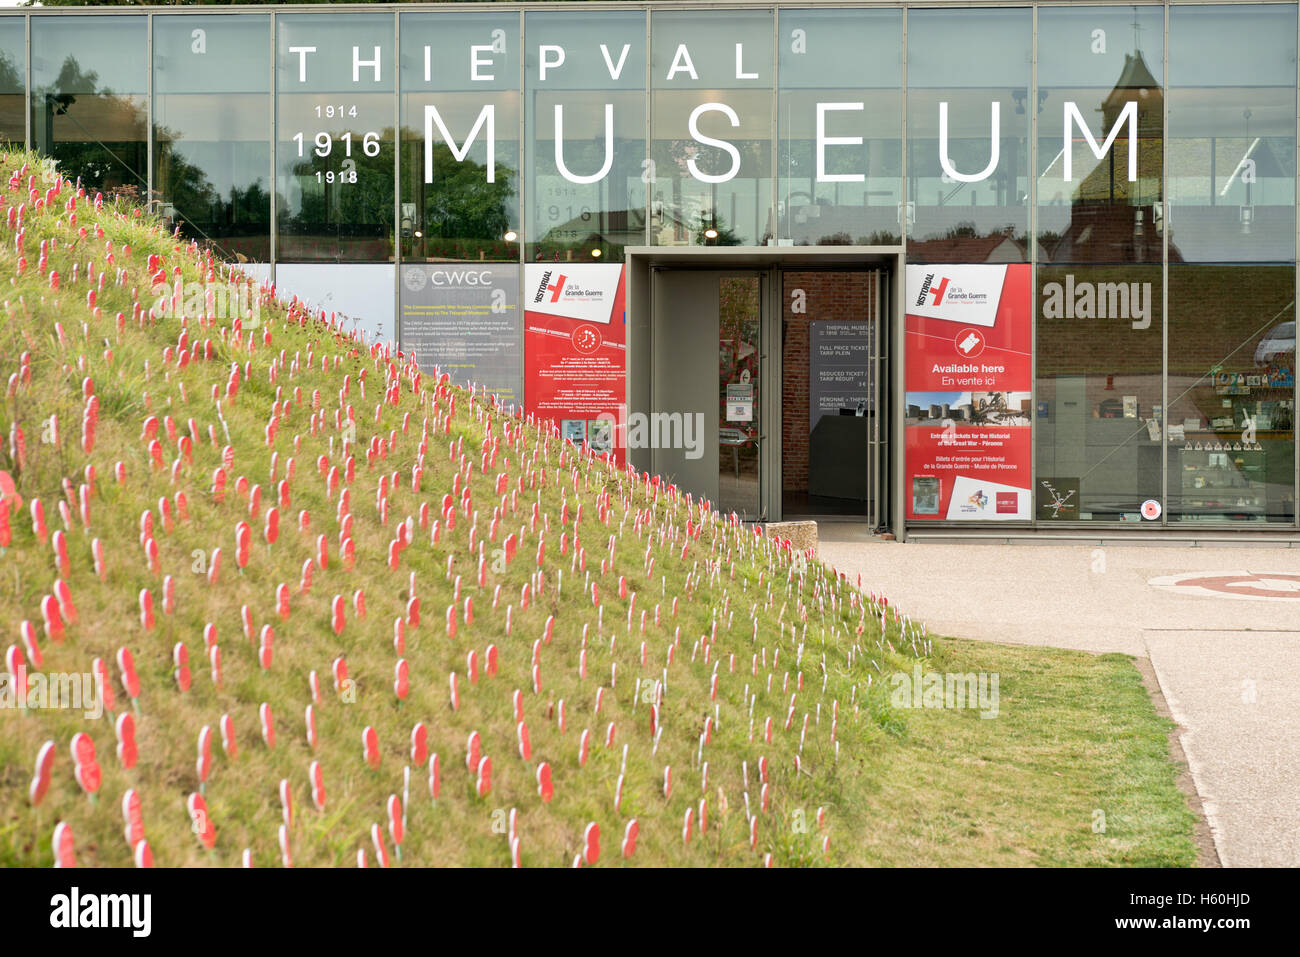 Thiepval-Denkmal Besucherzentrum & Museum an der Somme, Frankreich. Zeigt den Eingang & hölzerne Erinnerung Mohn Stockfoto